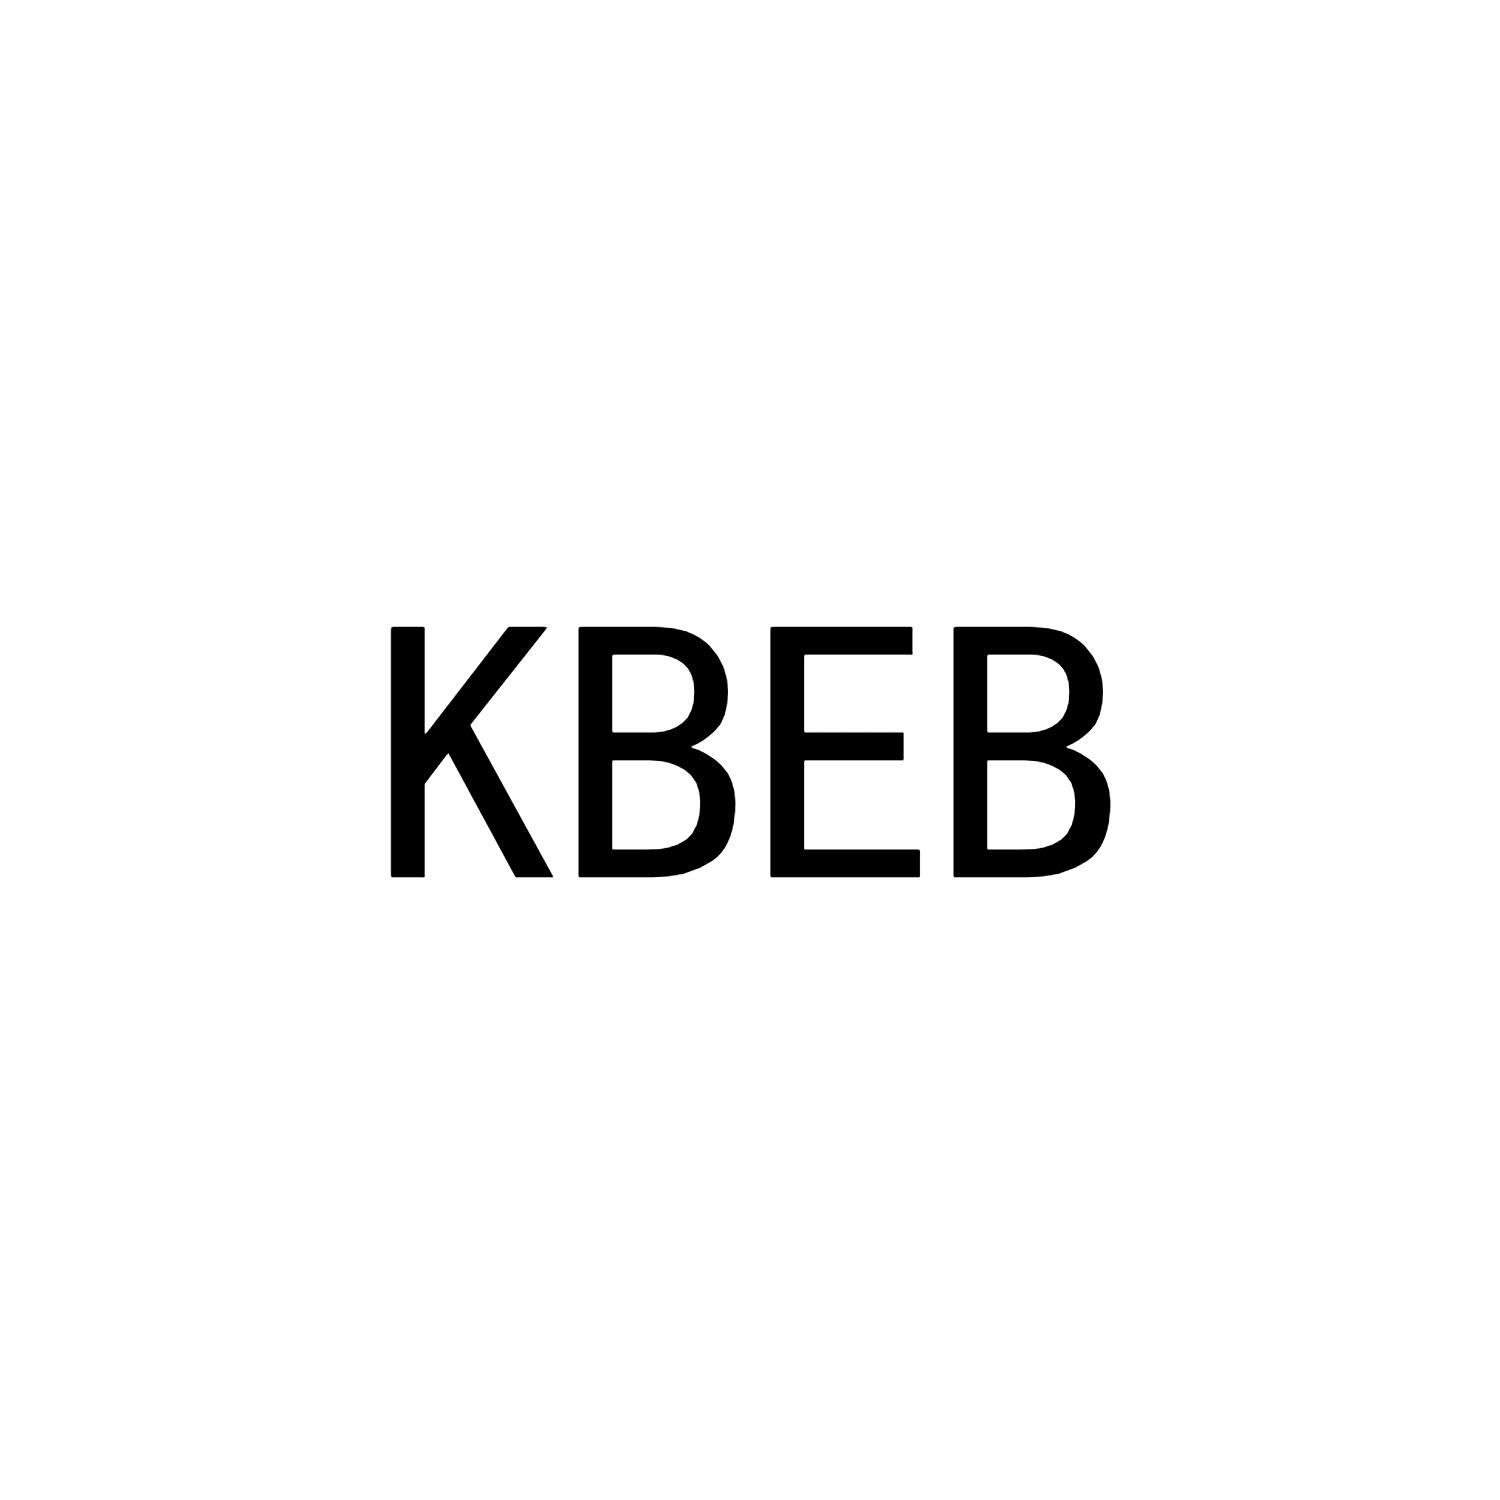 KBEB